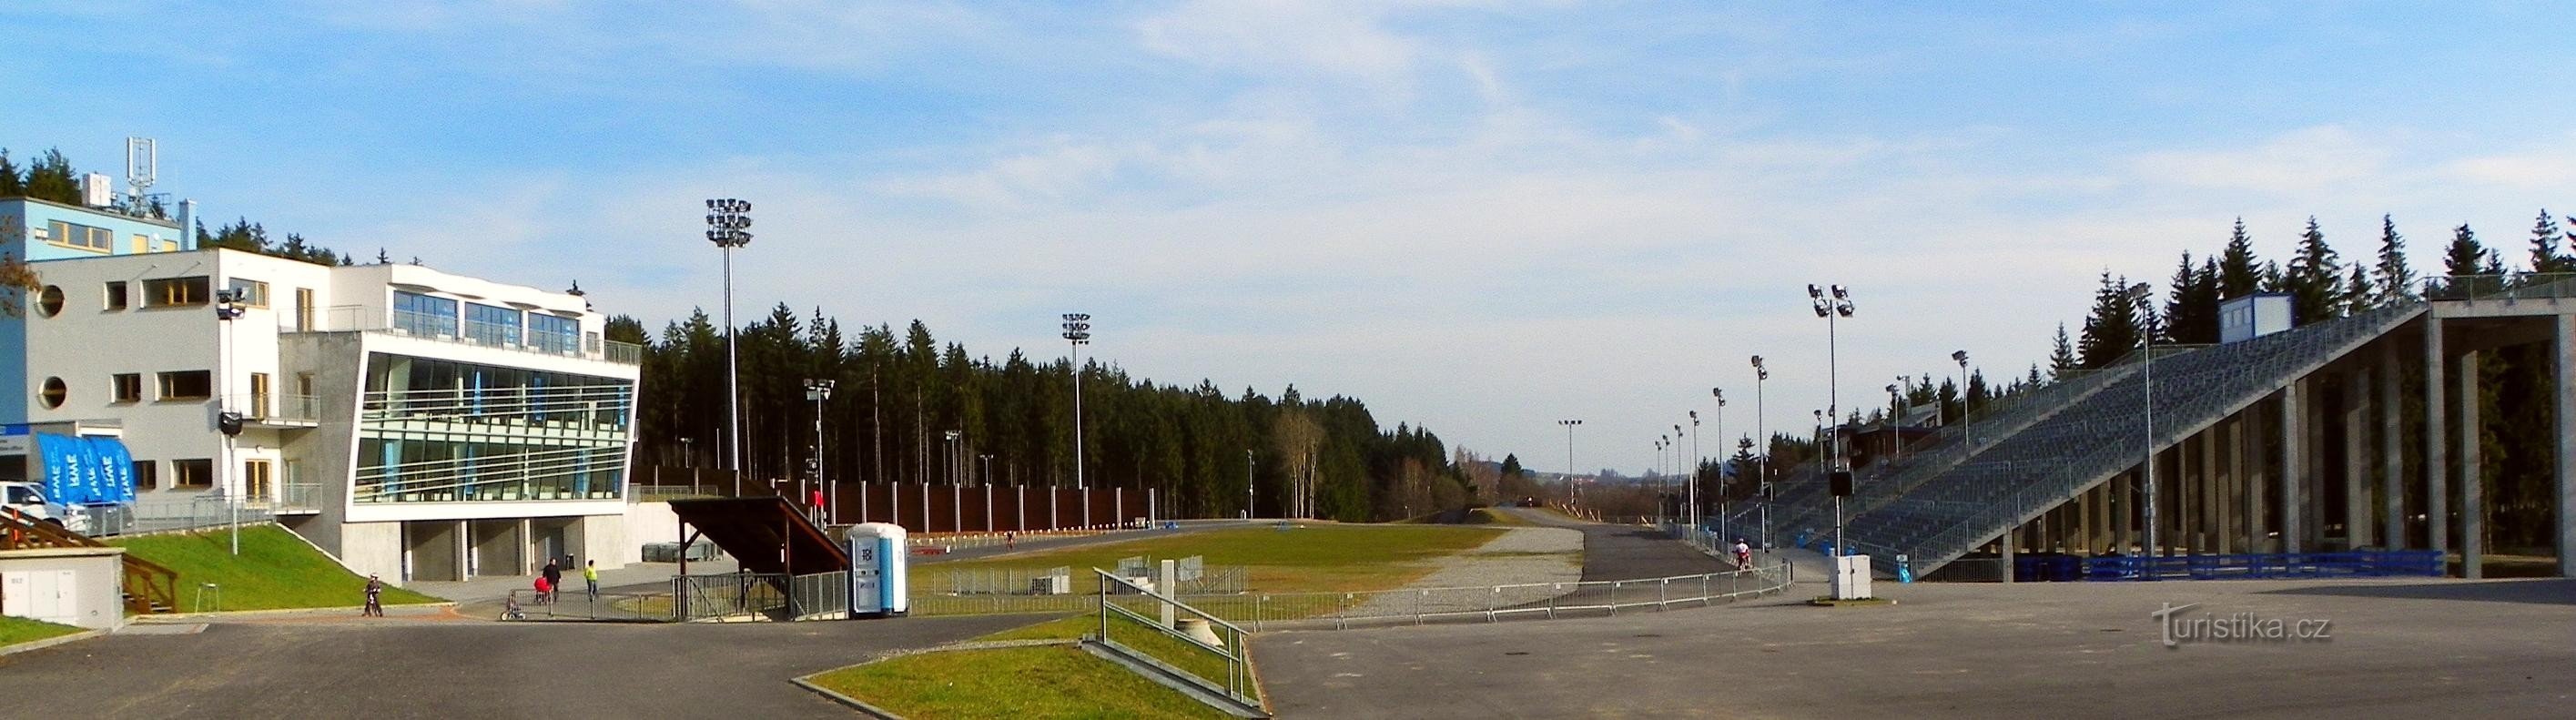 Arena Vysočina om sommeren